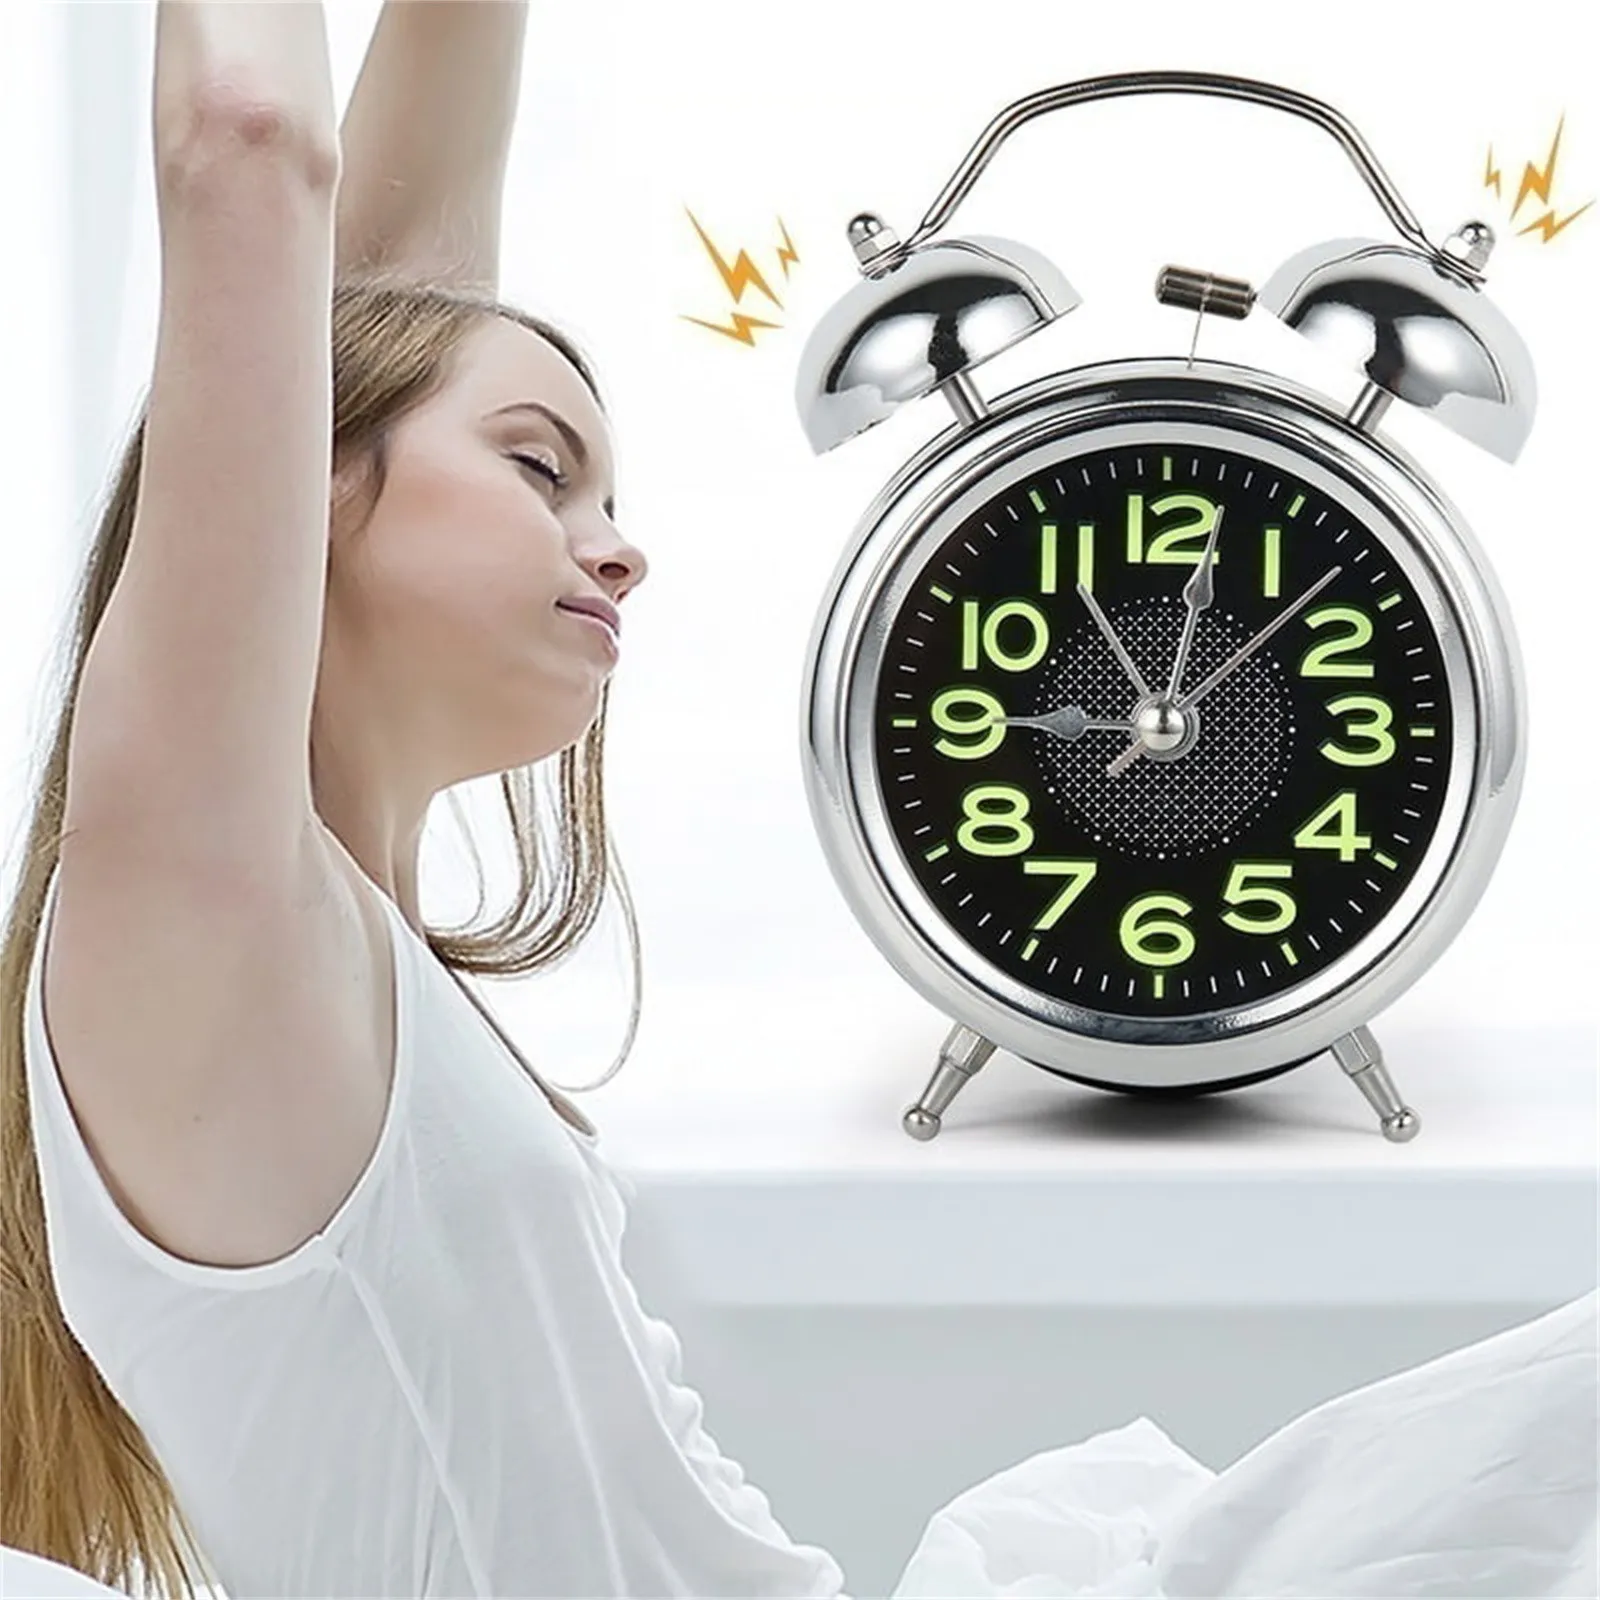 Reloj despertador mecánico, doble campana Bellalarmclock ultra silencioso  Reloj despertador silencioso Respuesta rápida